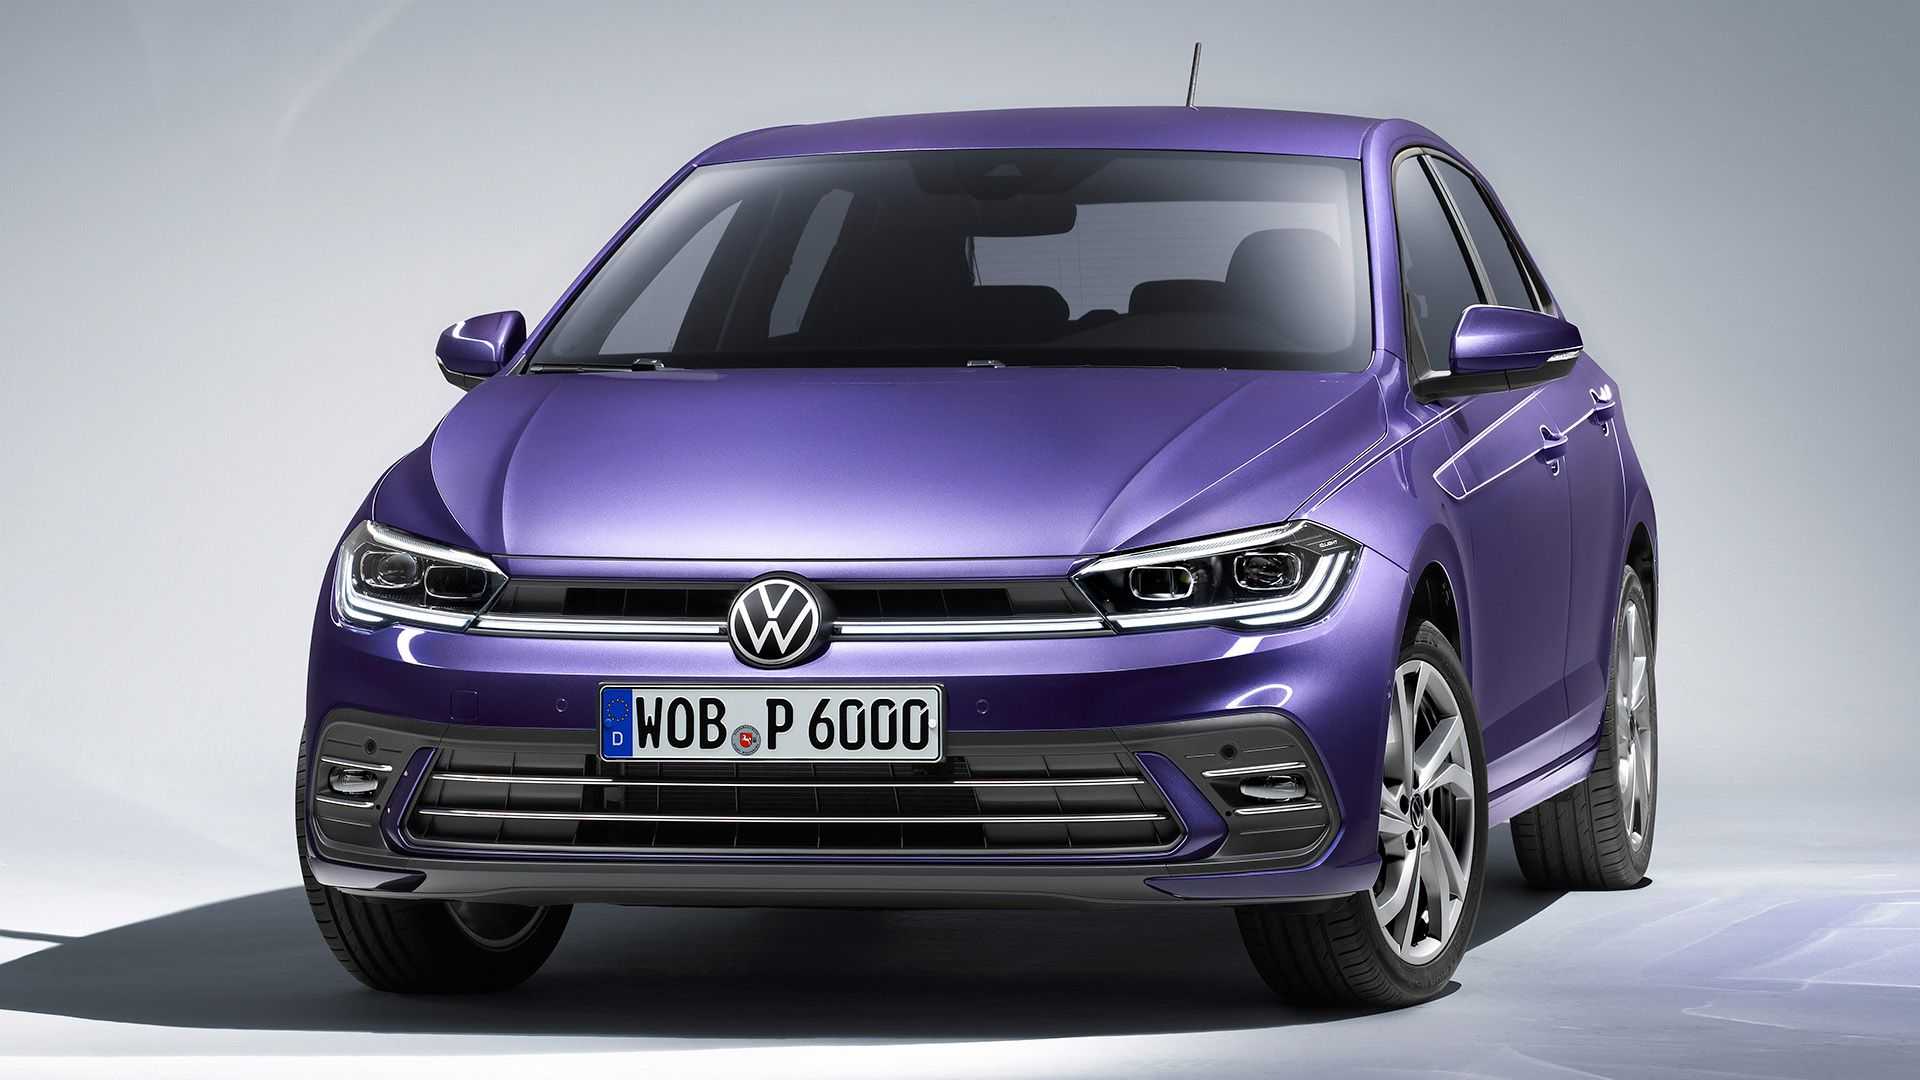 Volkswagen afmetingen, interieurs, motoren, prijzen en concurrenten - AutoScout24